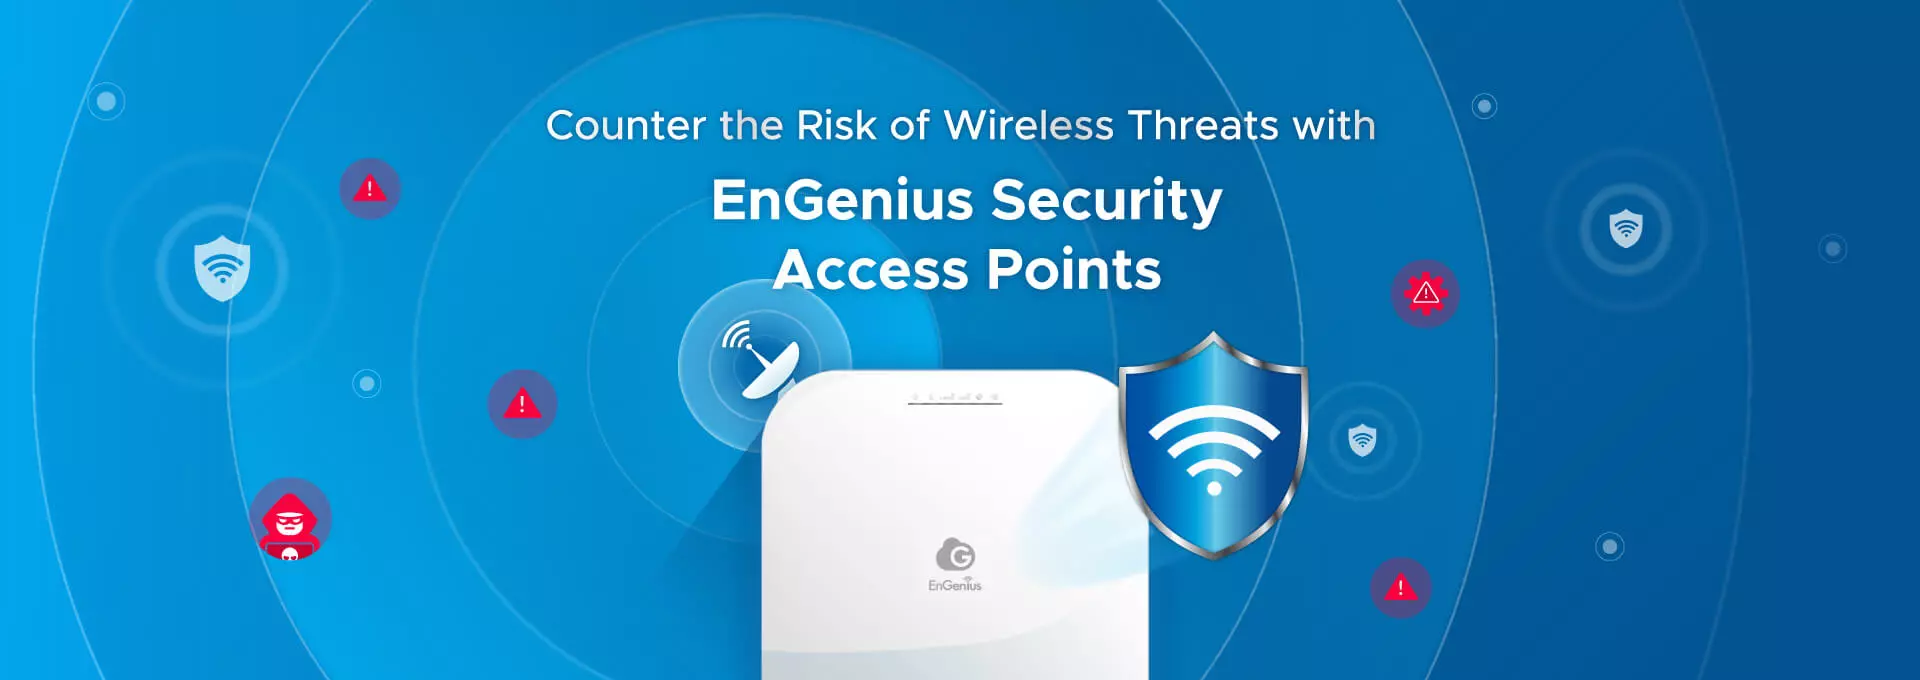 engenius access point